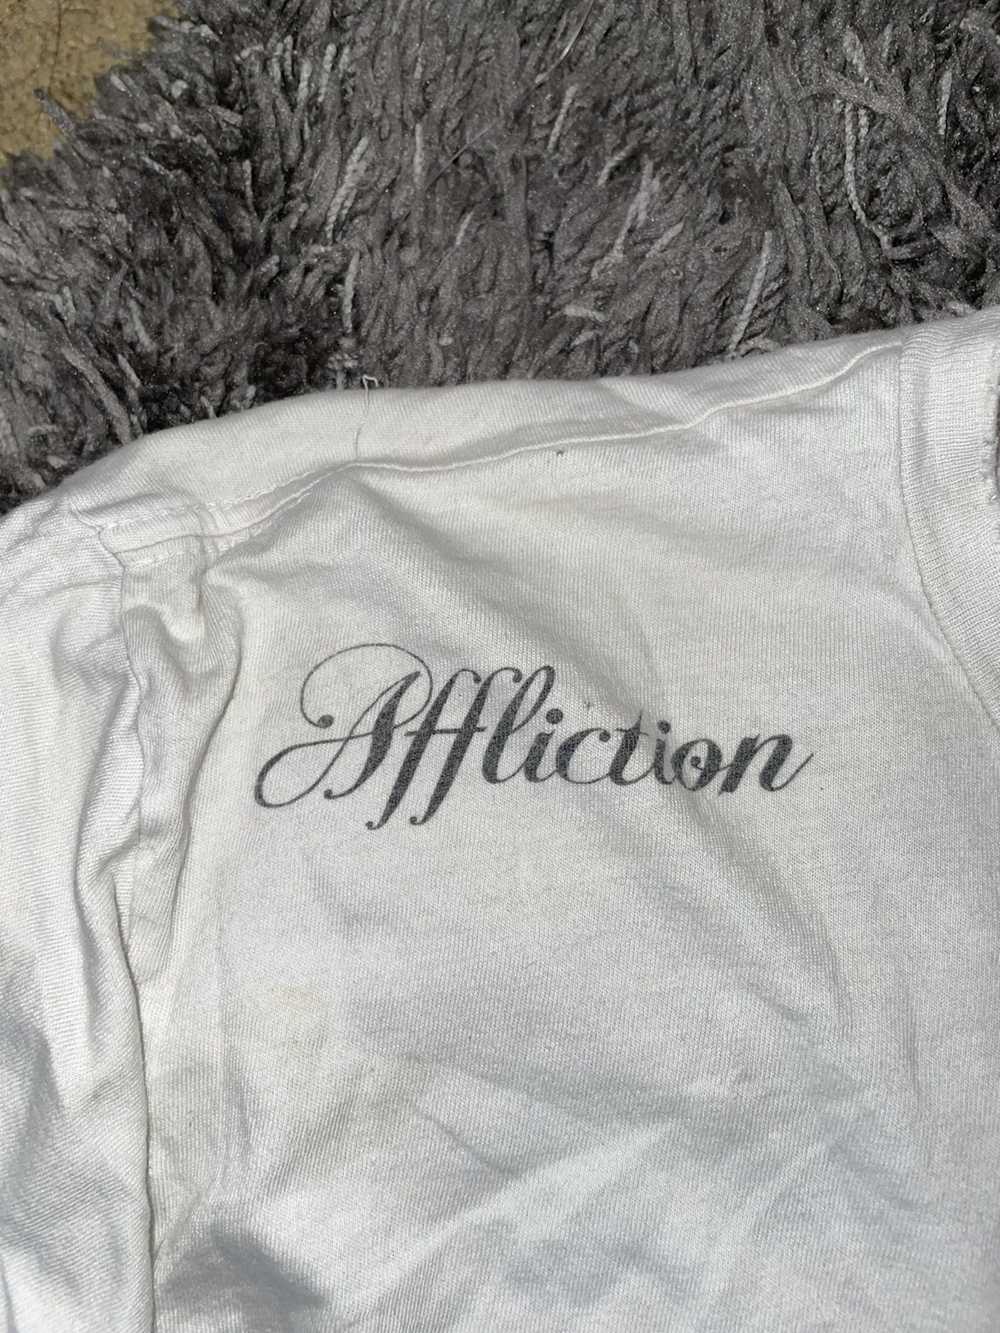 Affliction insane affliction shirt - image 2